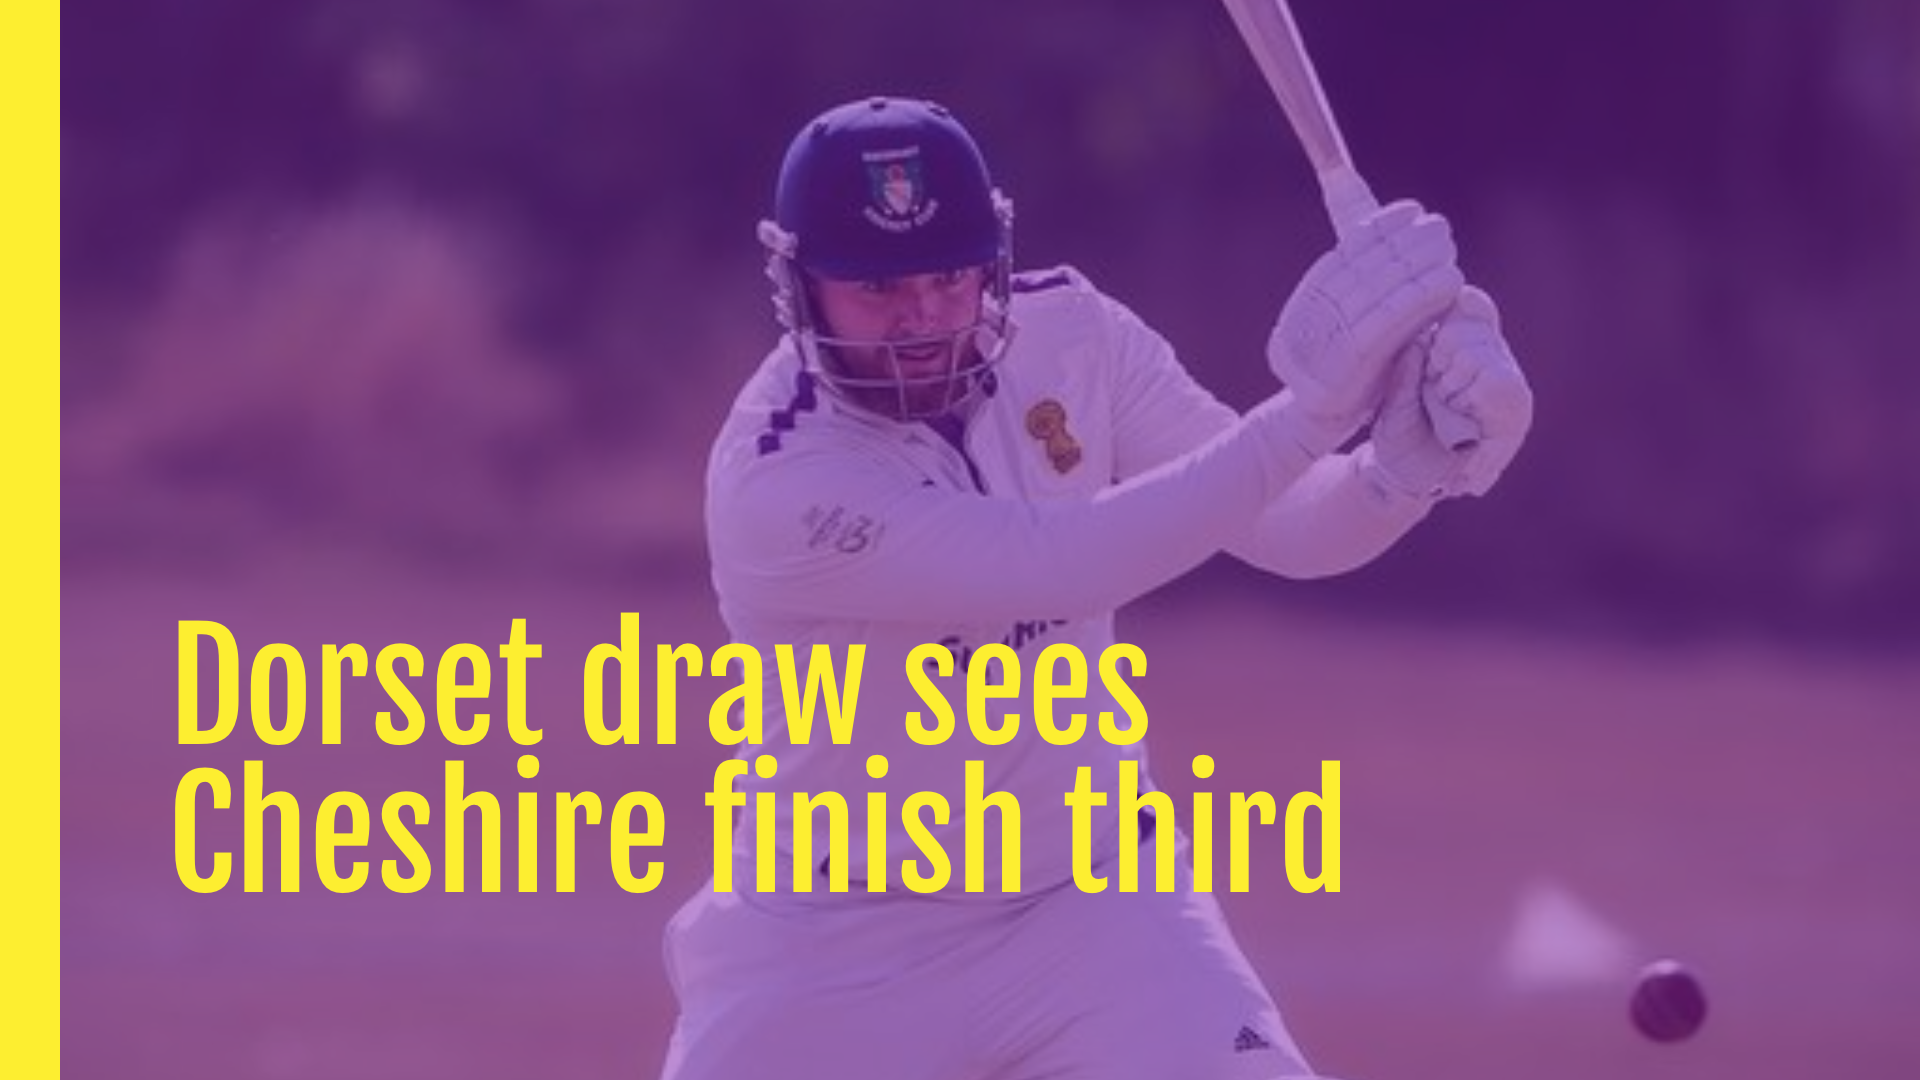 Dorset draw sees Cheshire finish third